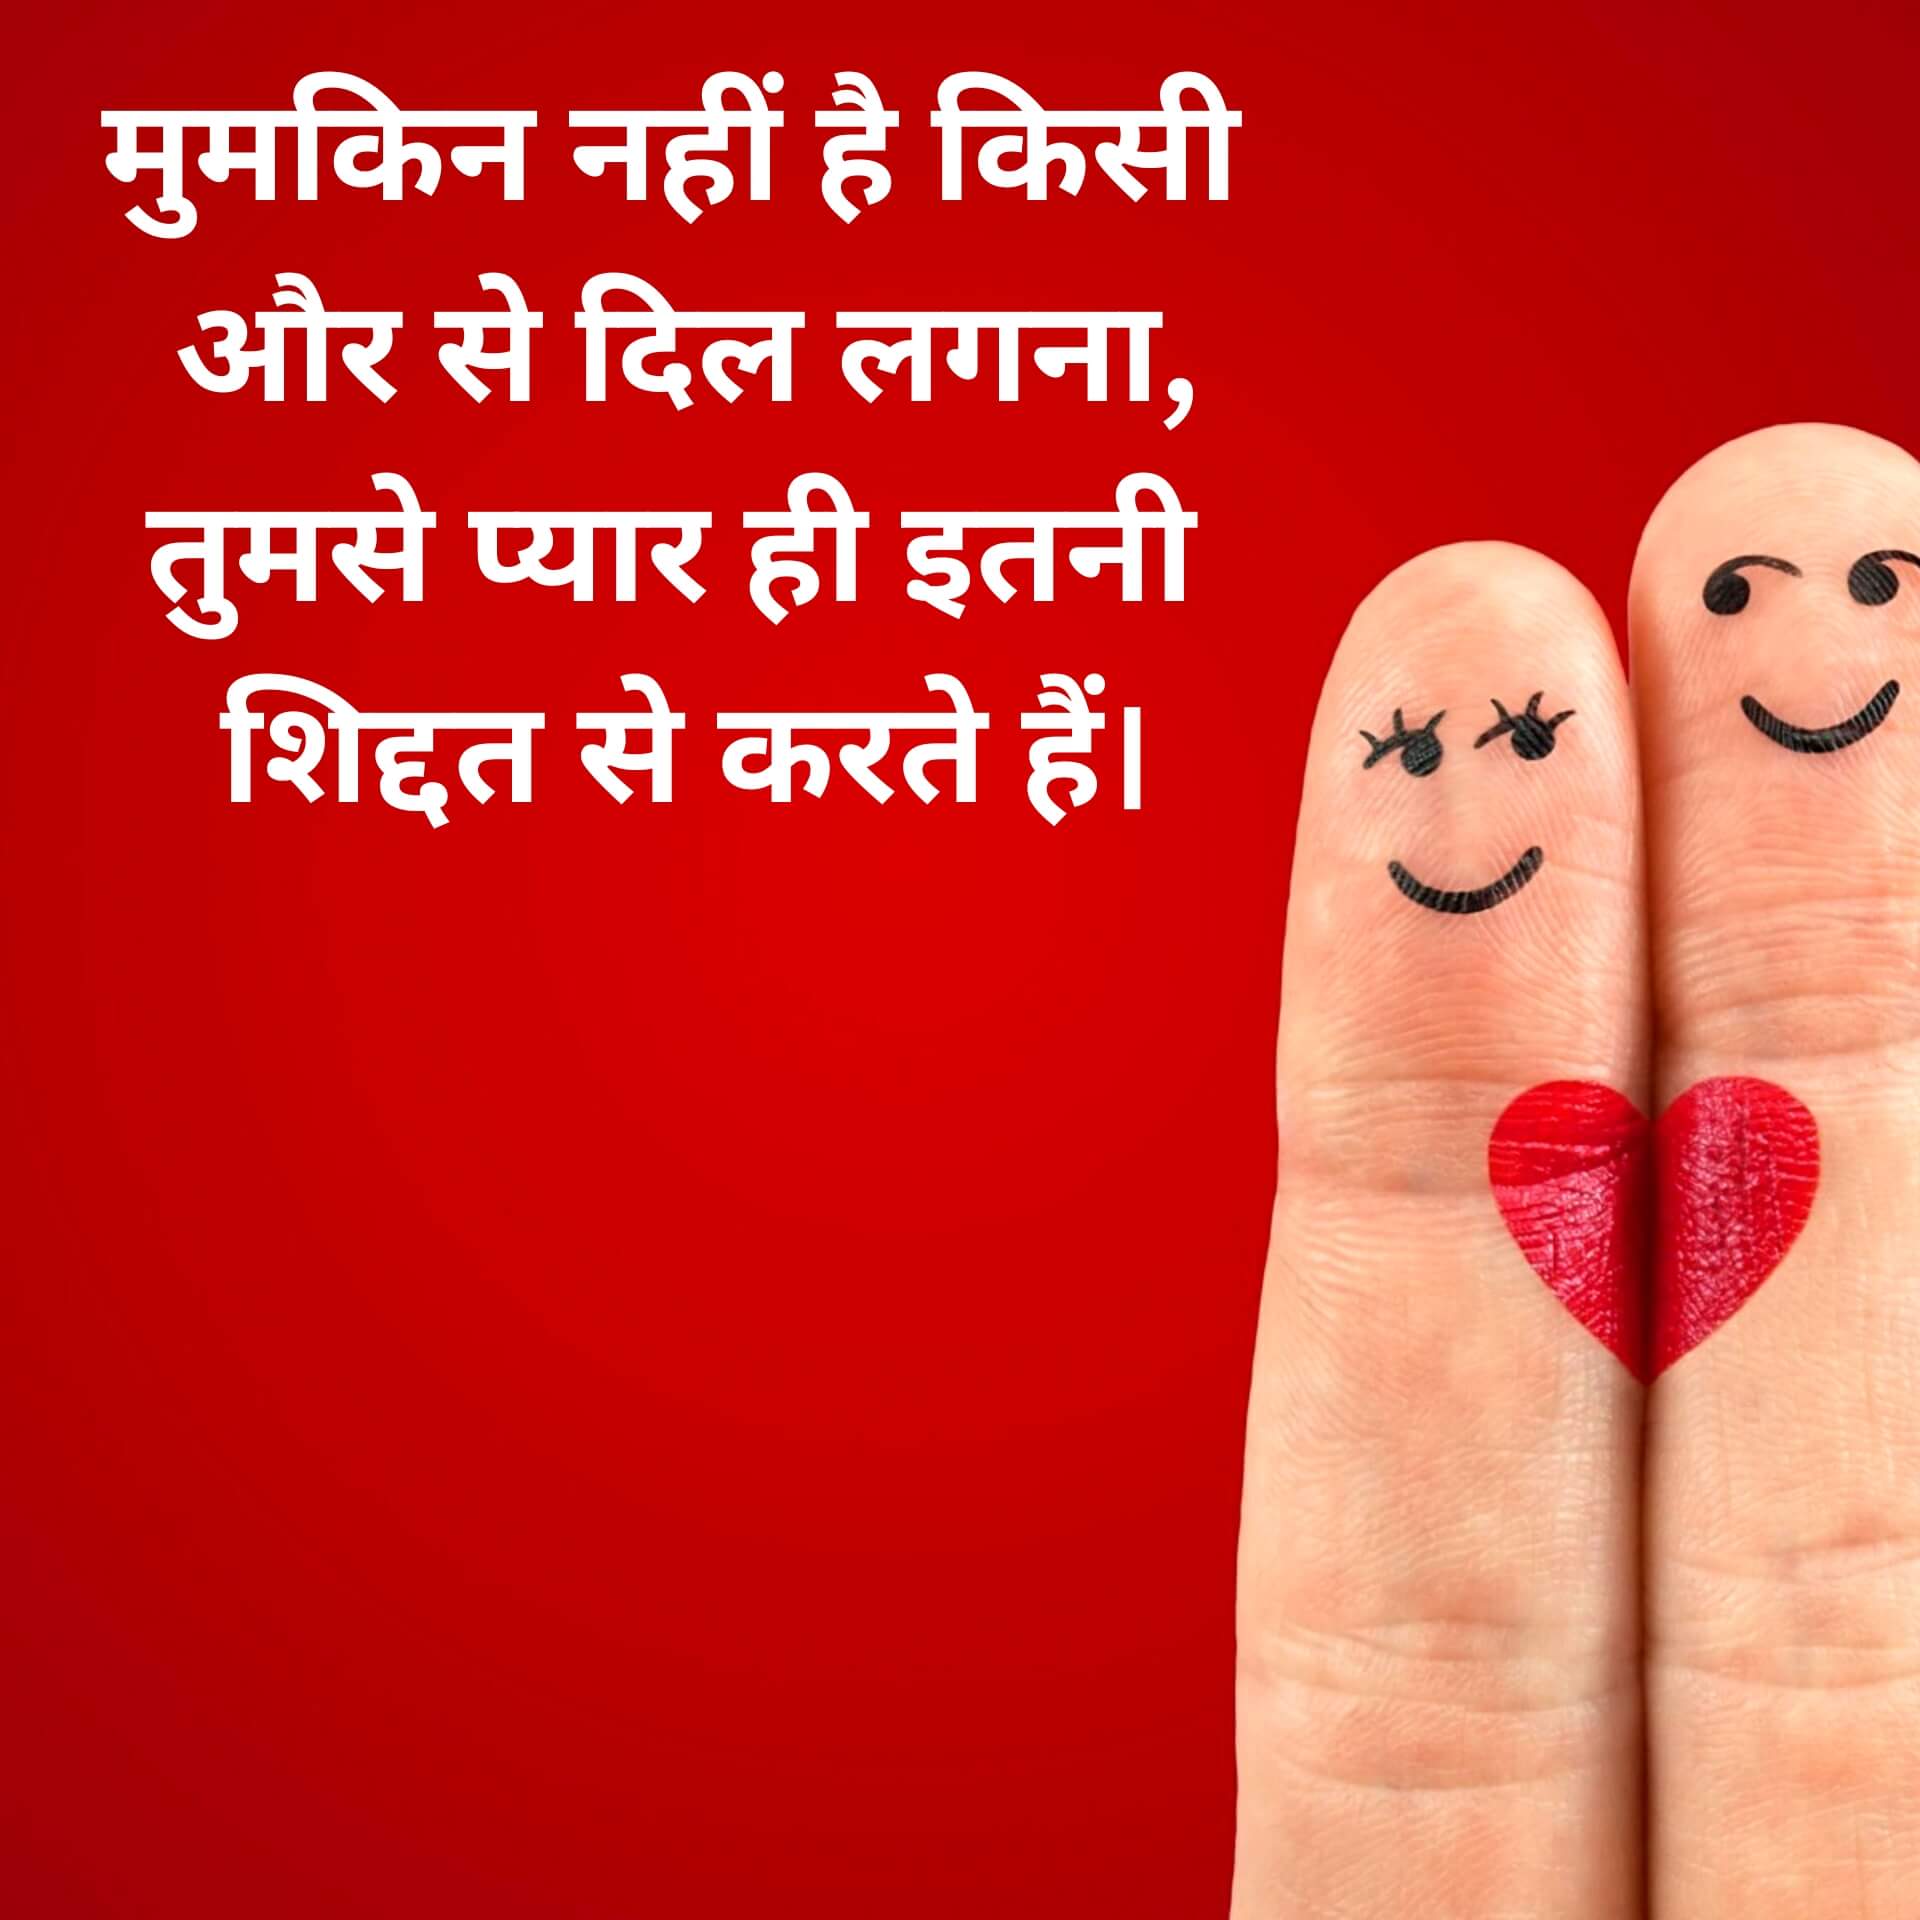 Hindi Love Shayari Pics Download